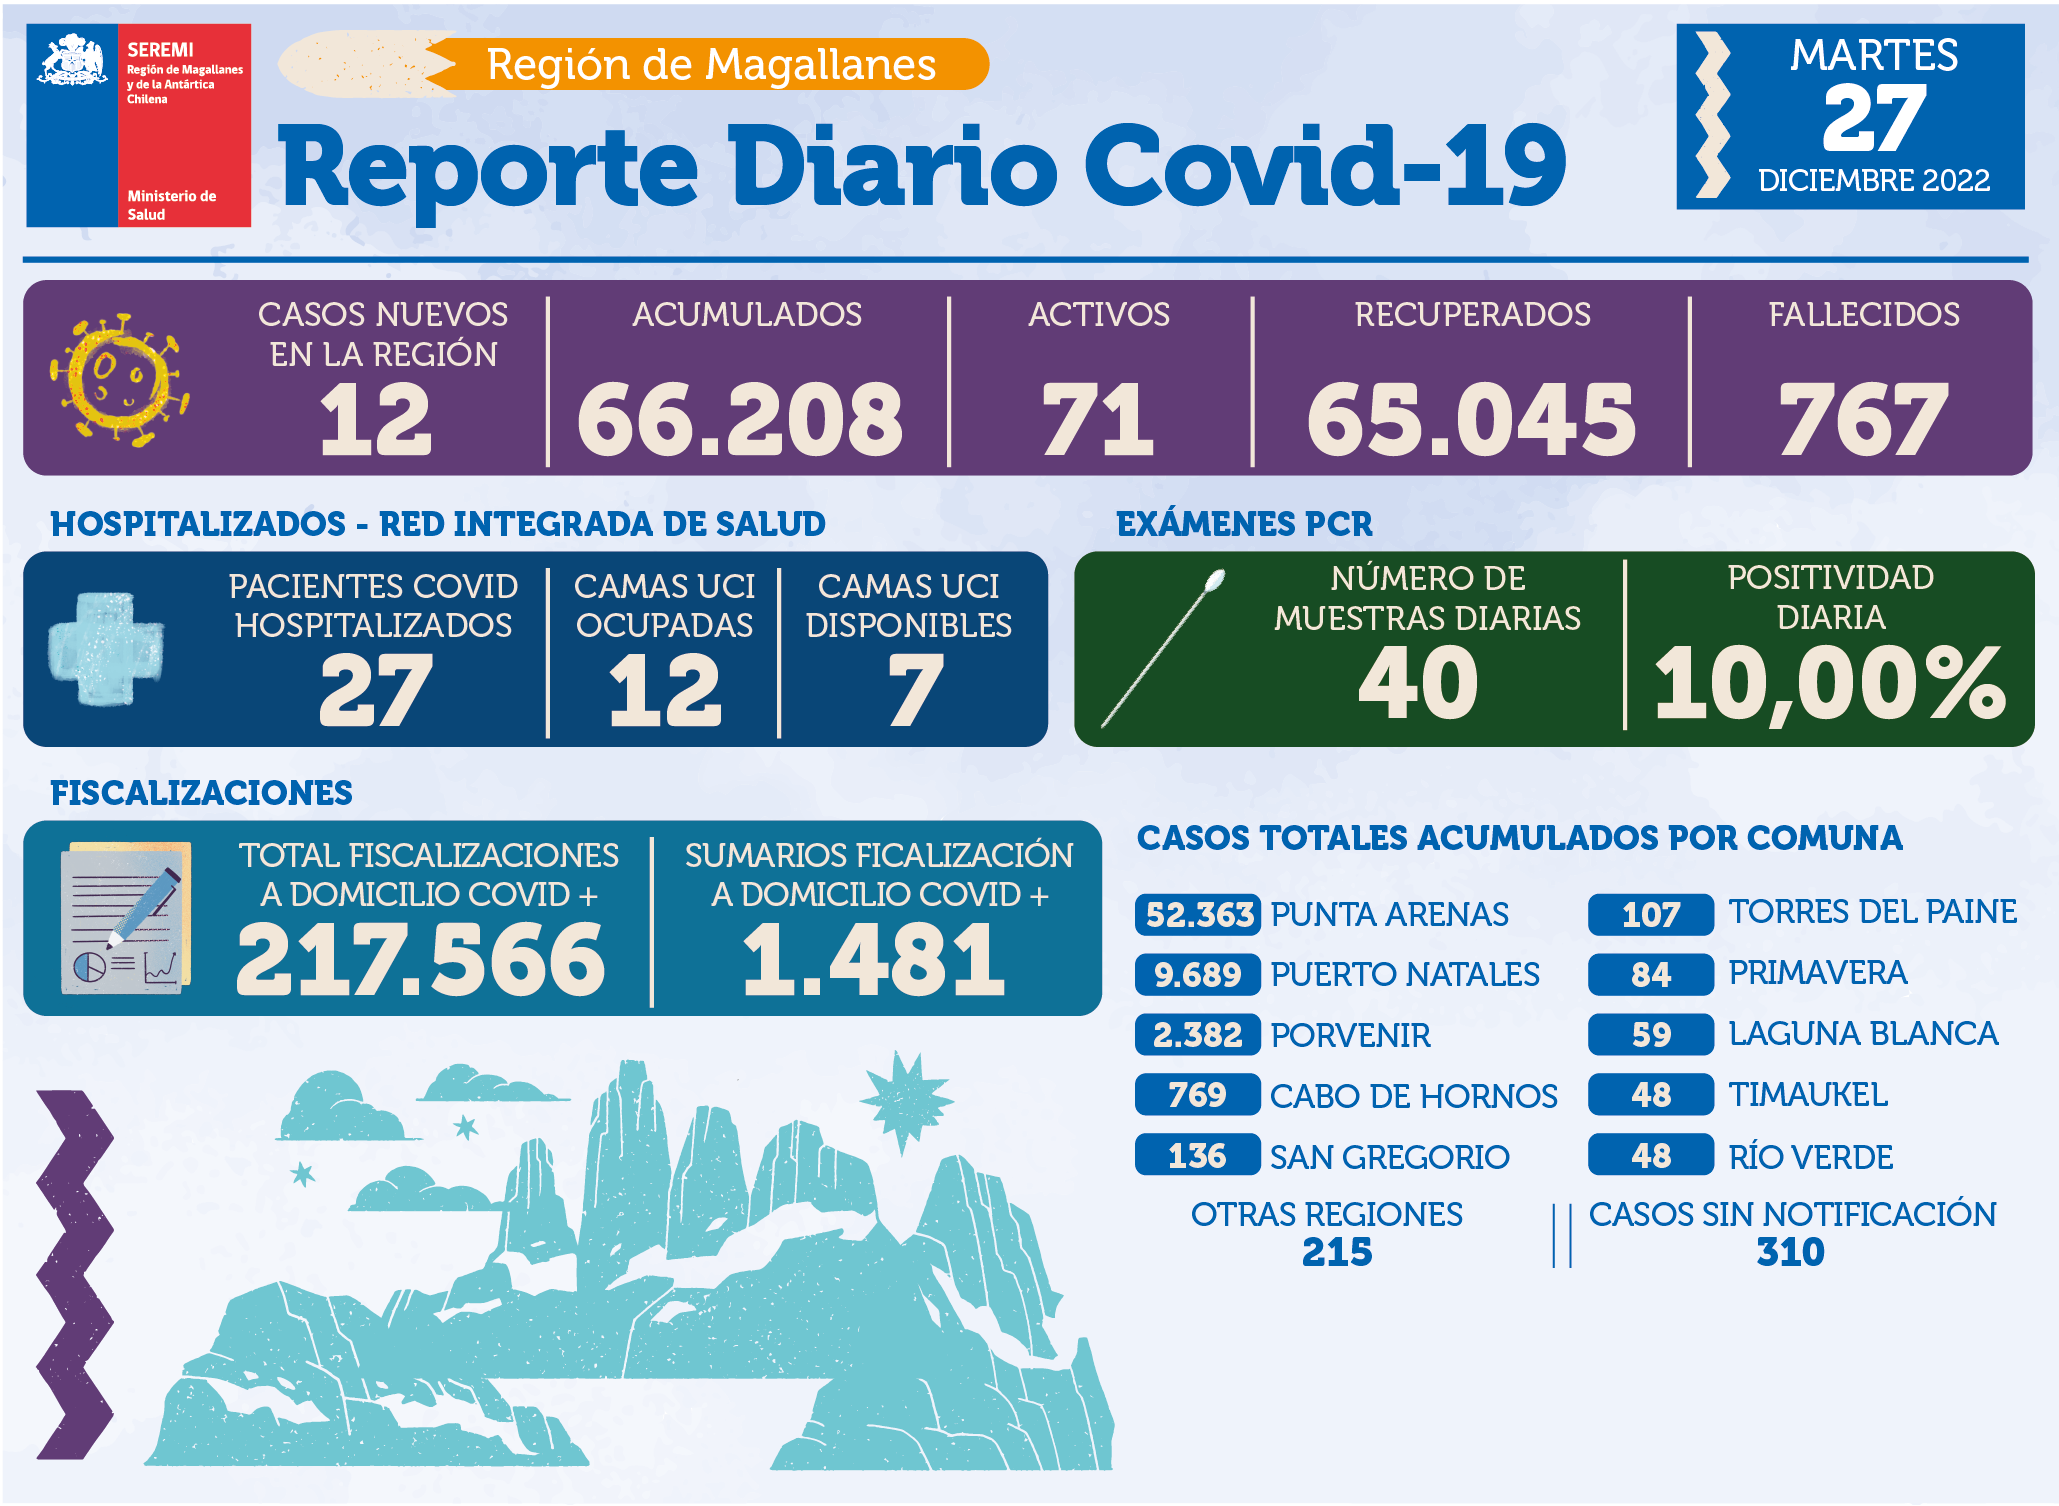 12 casos nuevos de covid19 se registran hoy 27 de diciembre en Magallanes